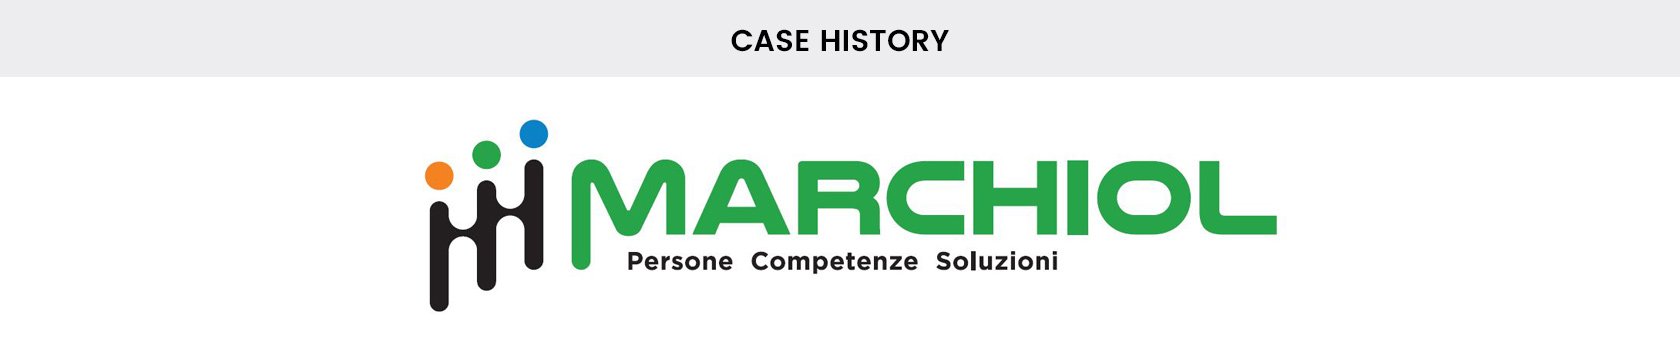 Clappit-Eventi-Aziendali-Business-B2B-Case-History-Marchiol-Top-002